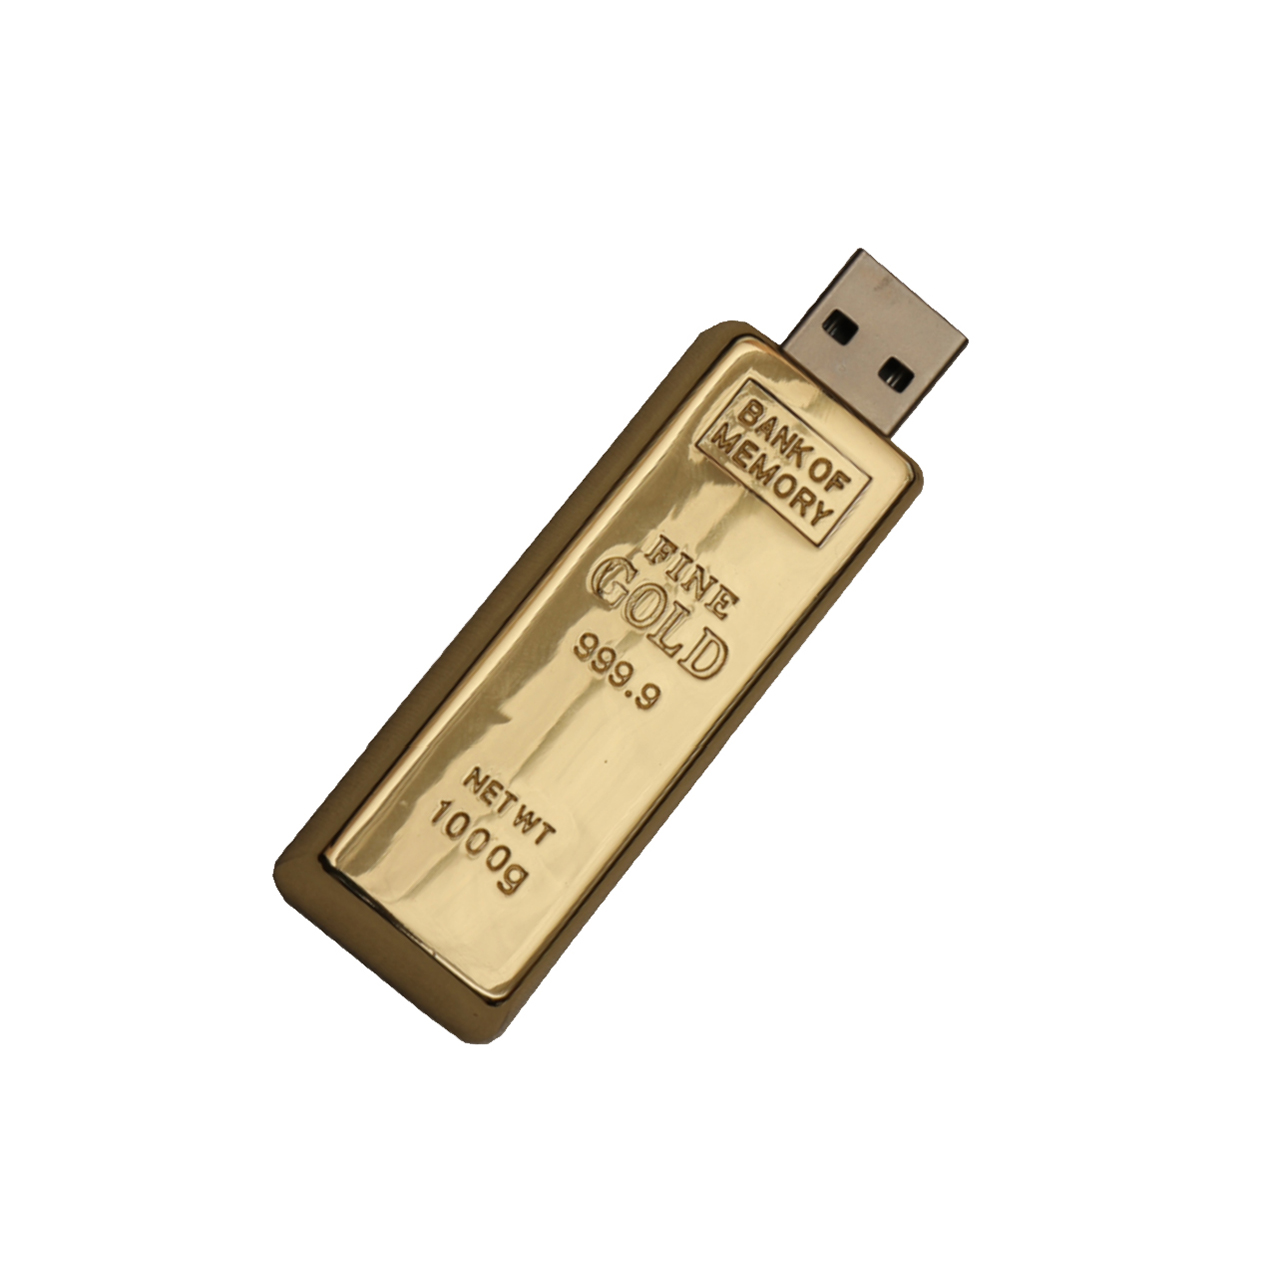 فلش مموری فلزی دایا دیتا طرح Gold Ingot مدل ME1001-USB3 ظرفیت 32 گیگابایت